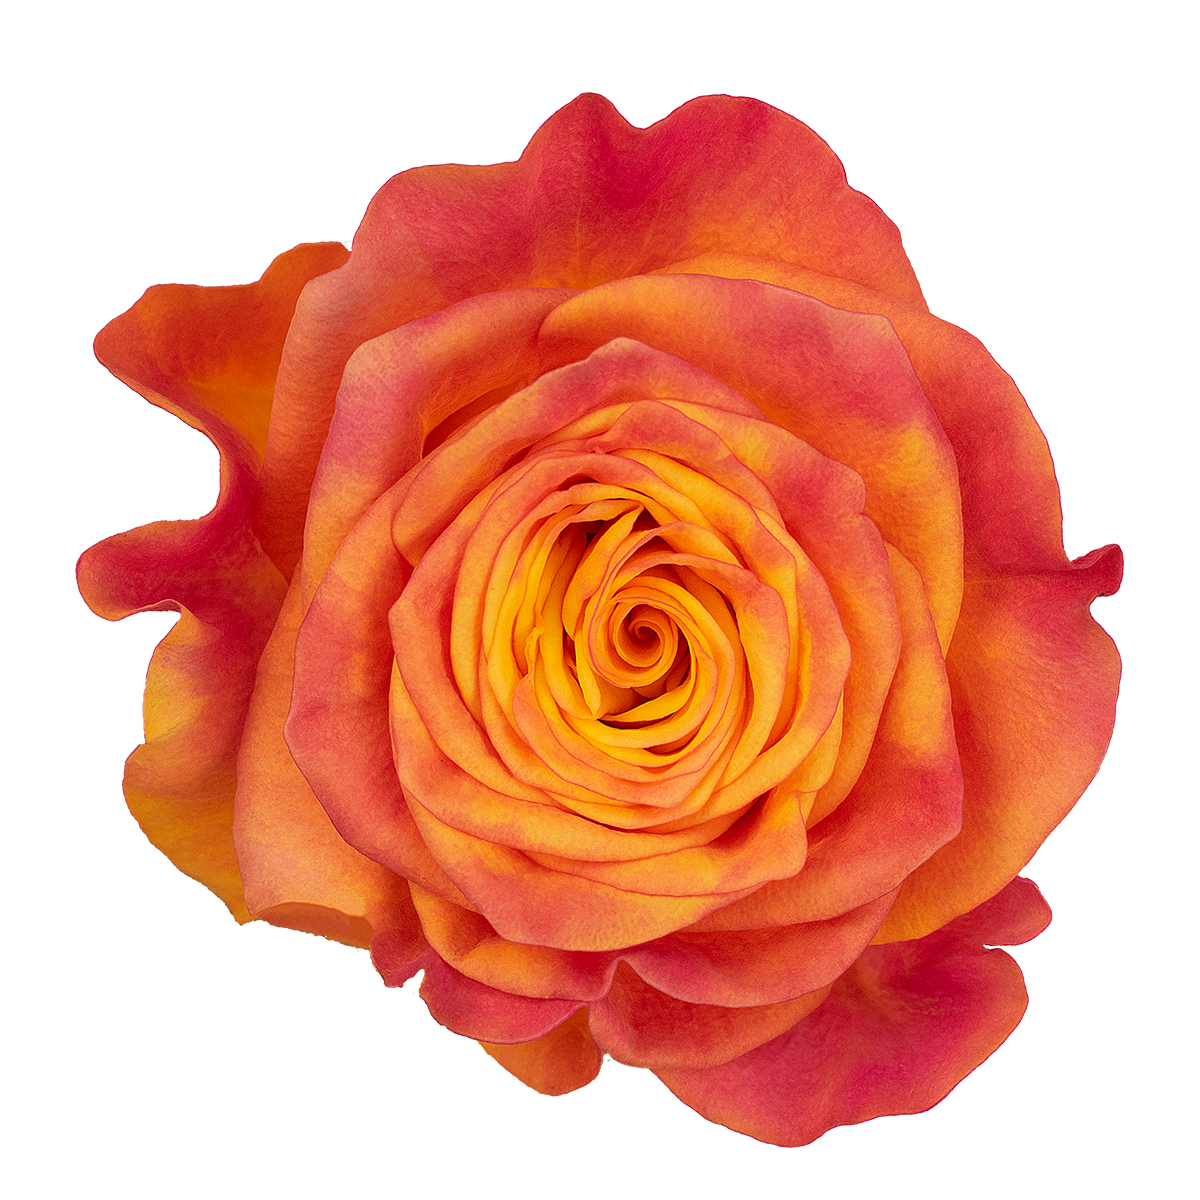 NEW HORIZON rose - Florist Rose Paradise! - Decofresh TOTF2020 on Thursd